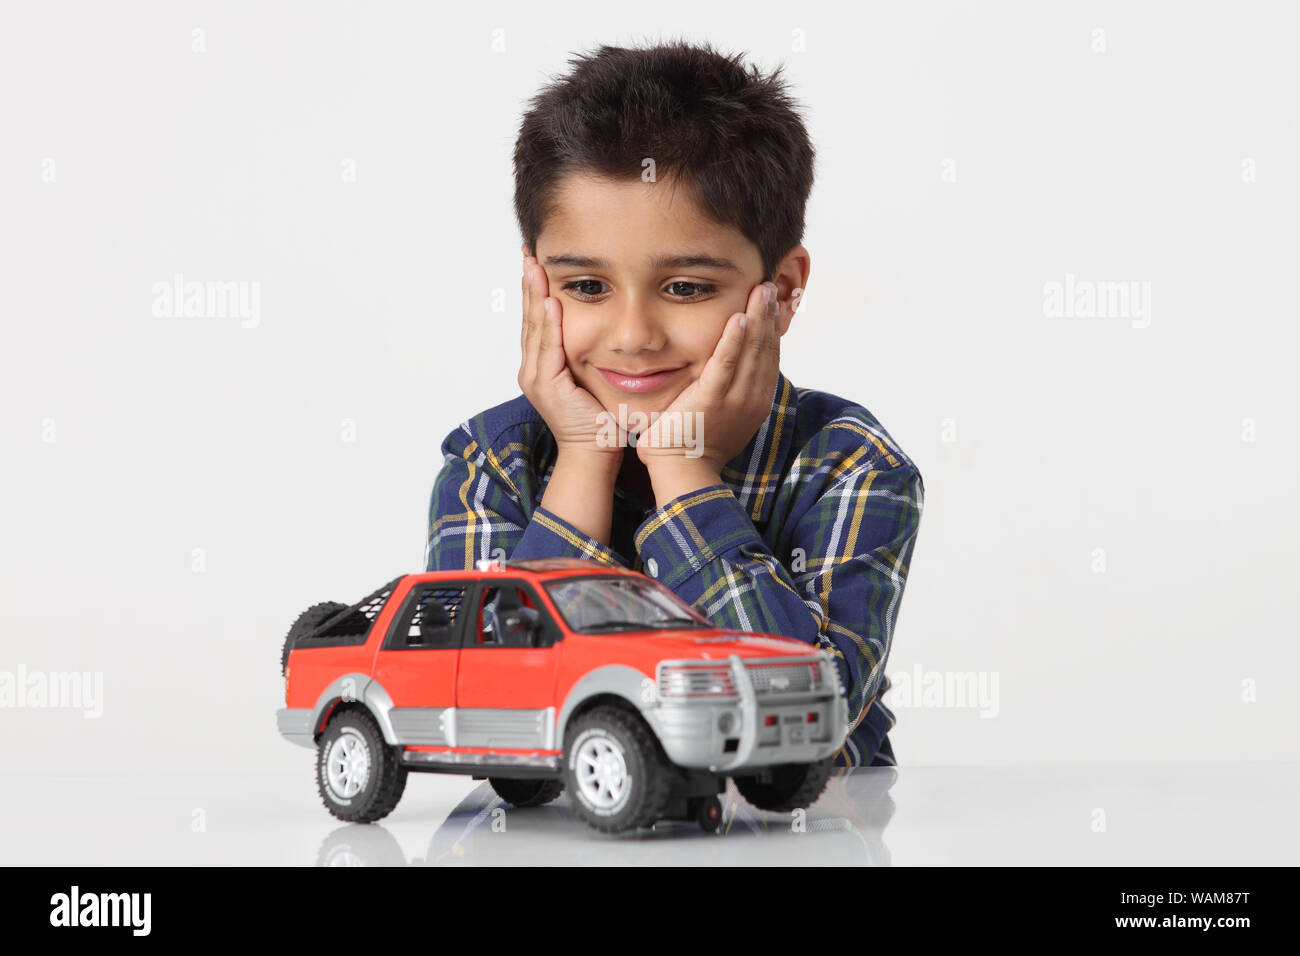 Garçon à la recherche de sa voiture-jouet Photo Stock - Alamy